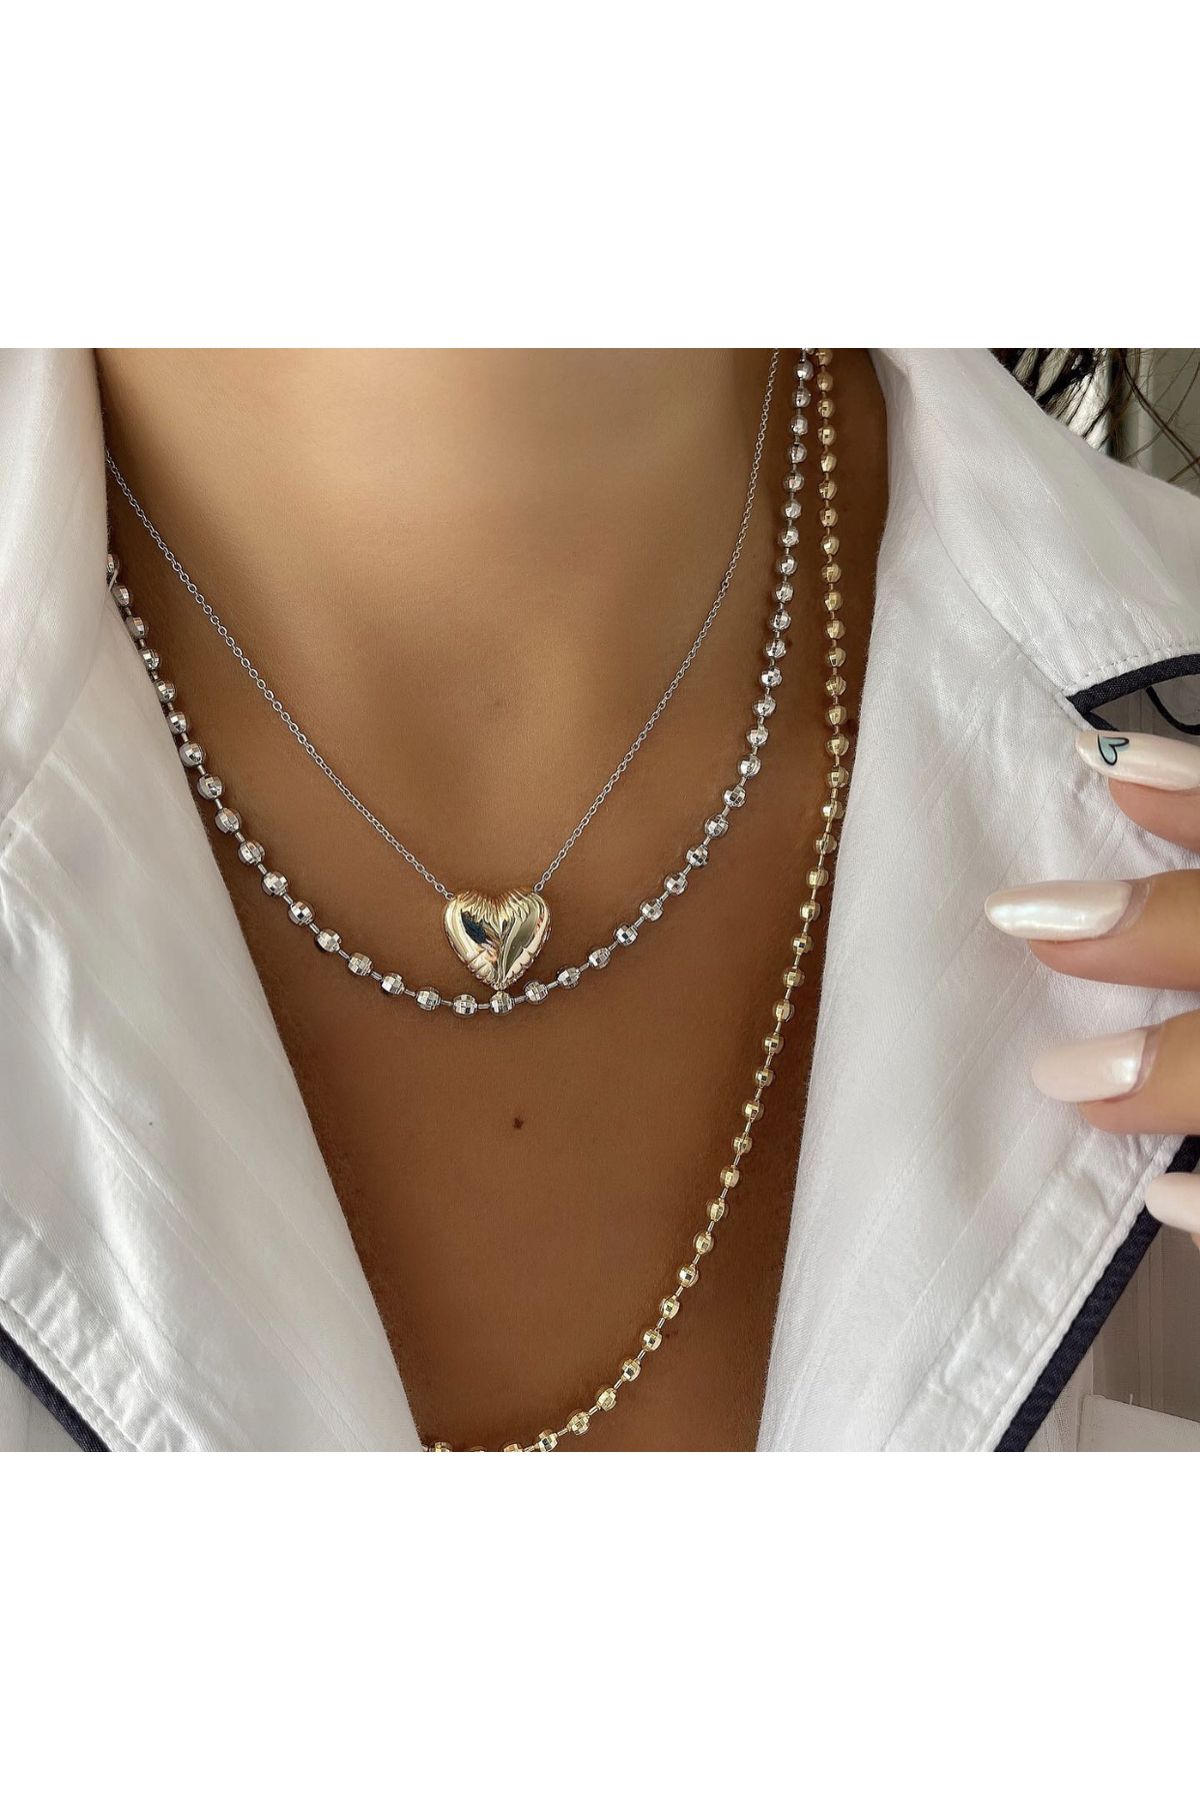 Lujo Jewelry Özel Kalp Çelik Kolye Takı Kararmaz Takı Aksesuar Çelik Kolye Çelik Takı